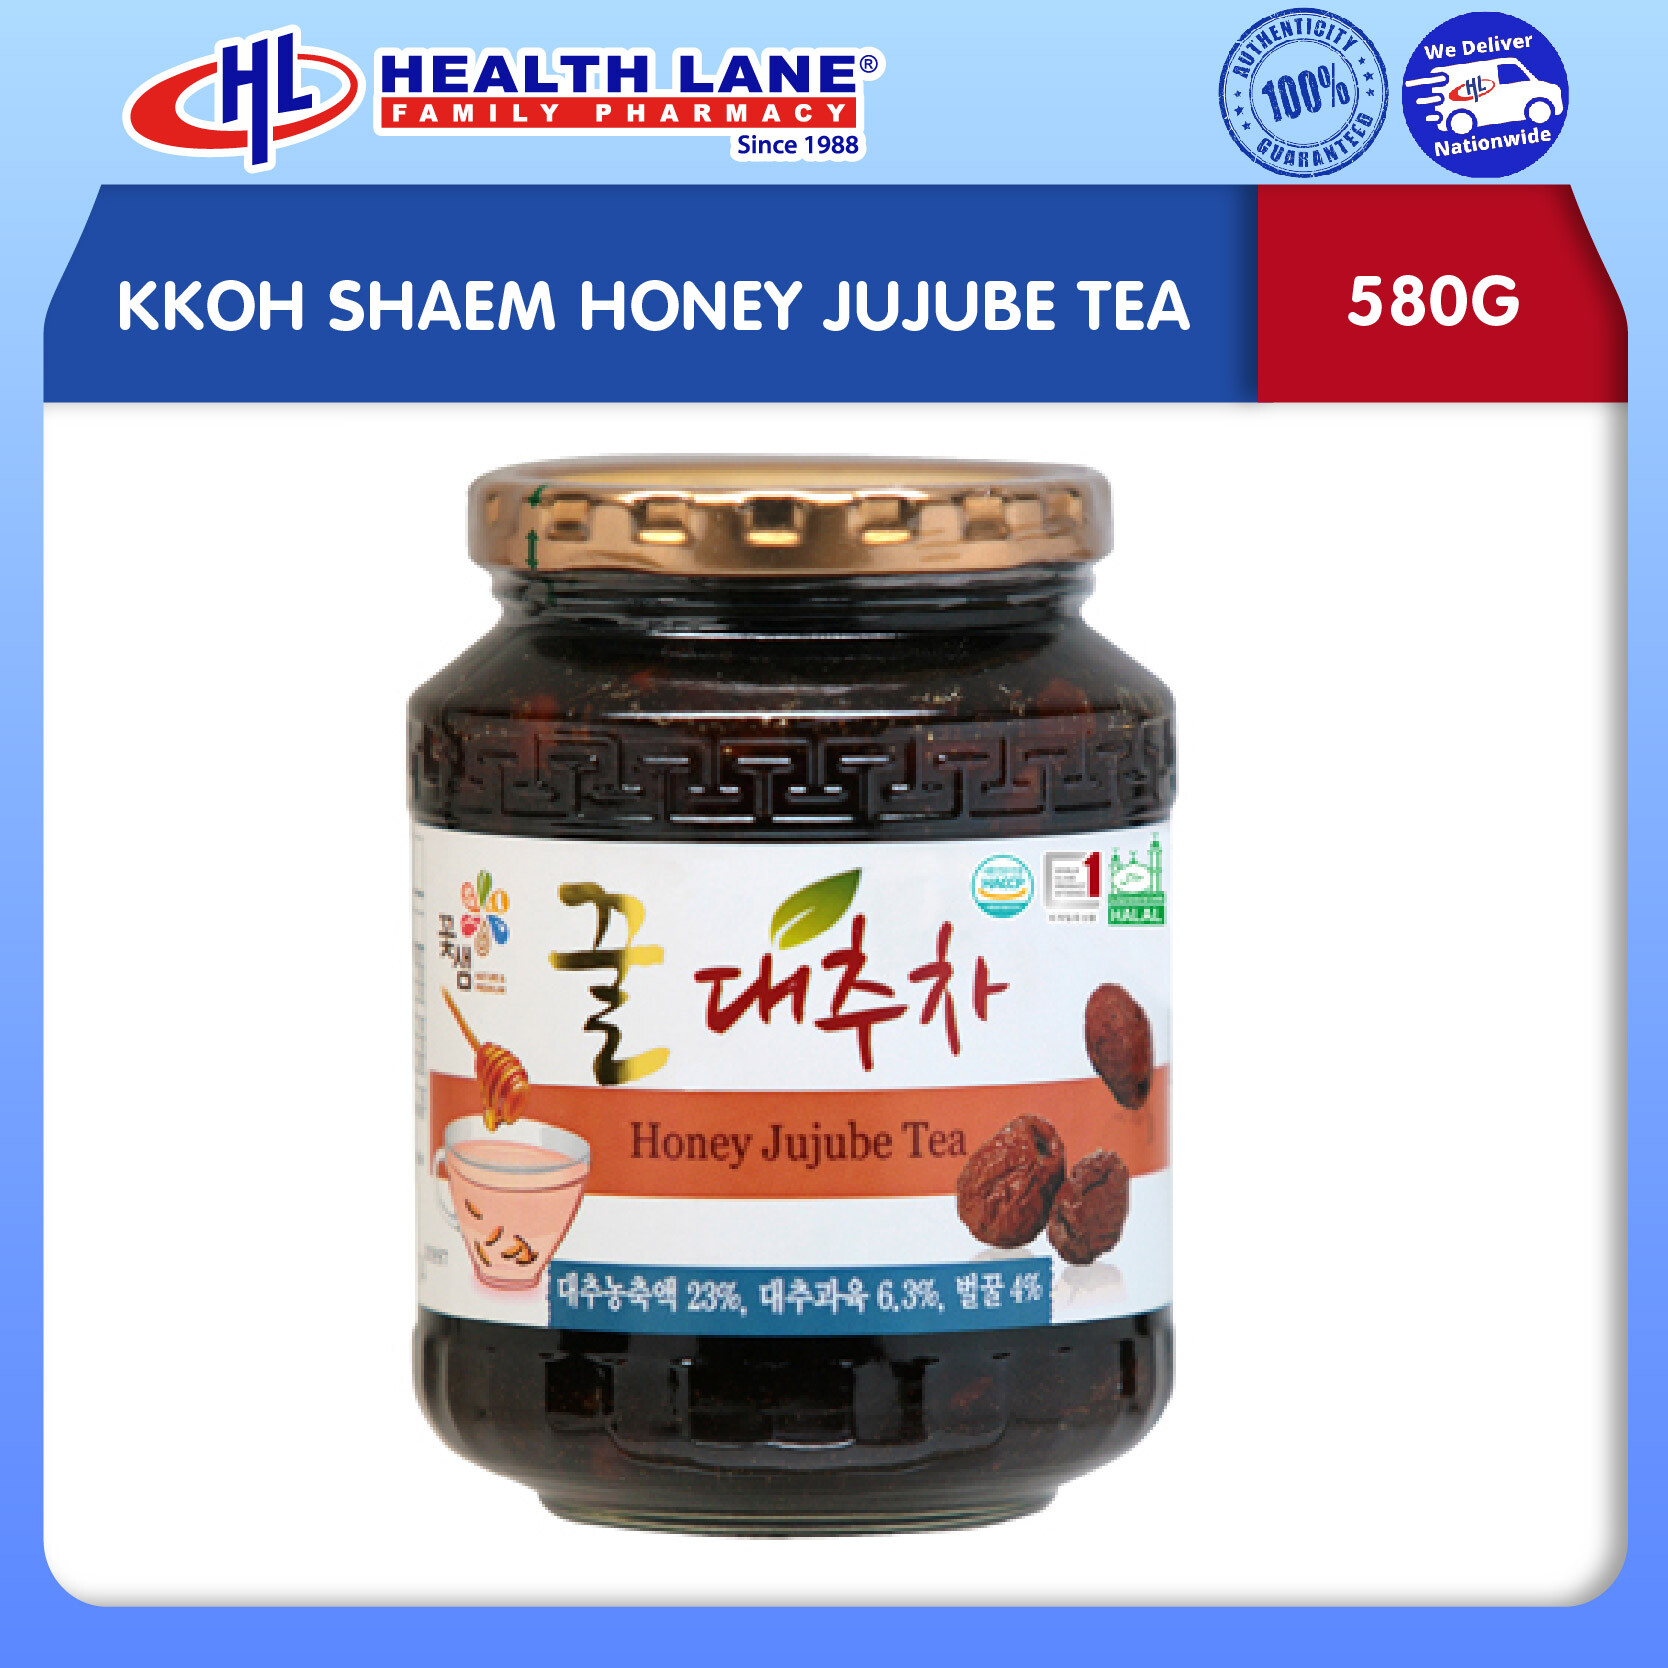 KKOH SHAEM HONEY JUJUBE TEA (580G)